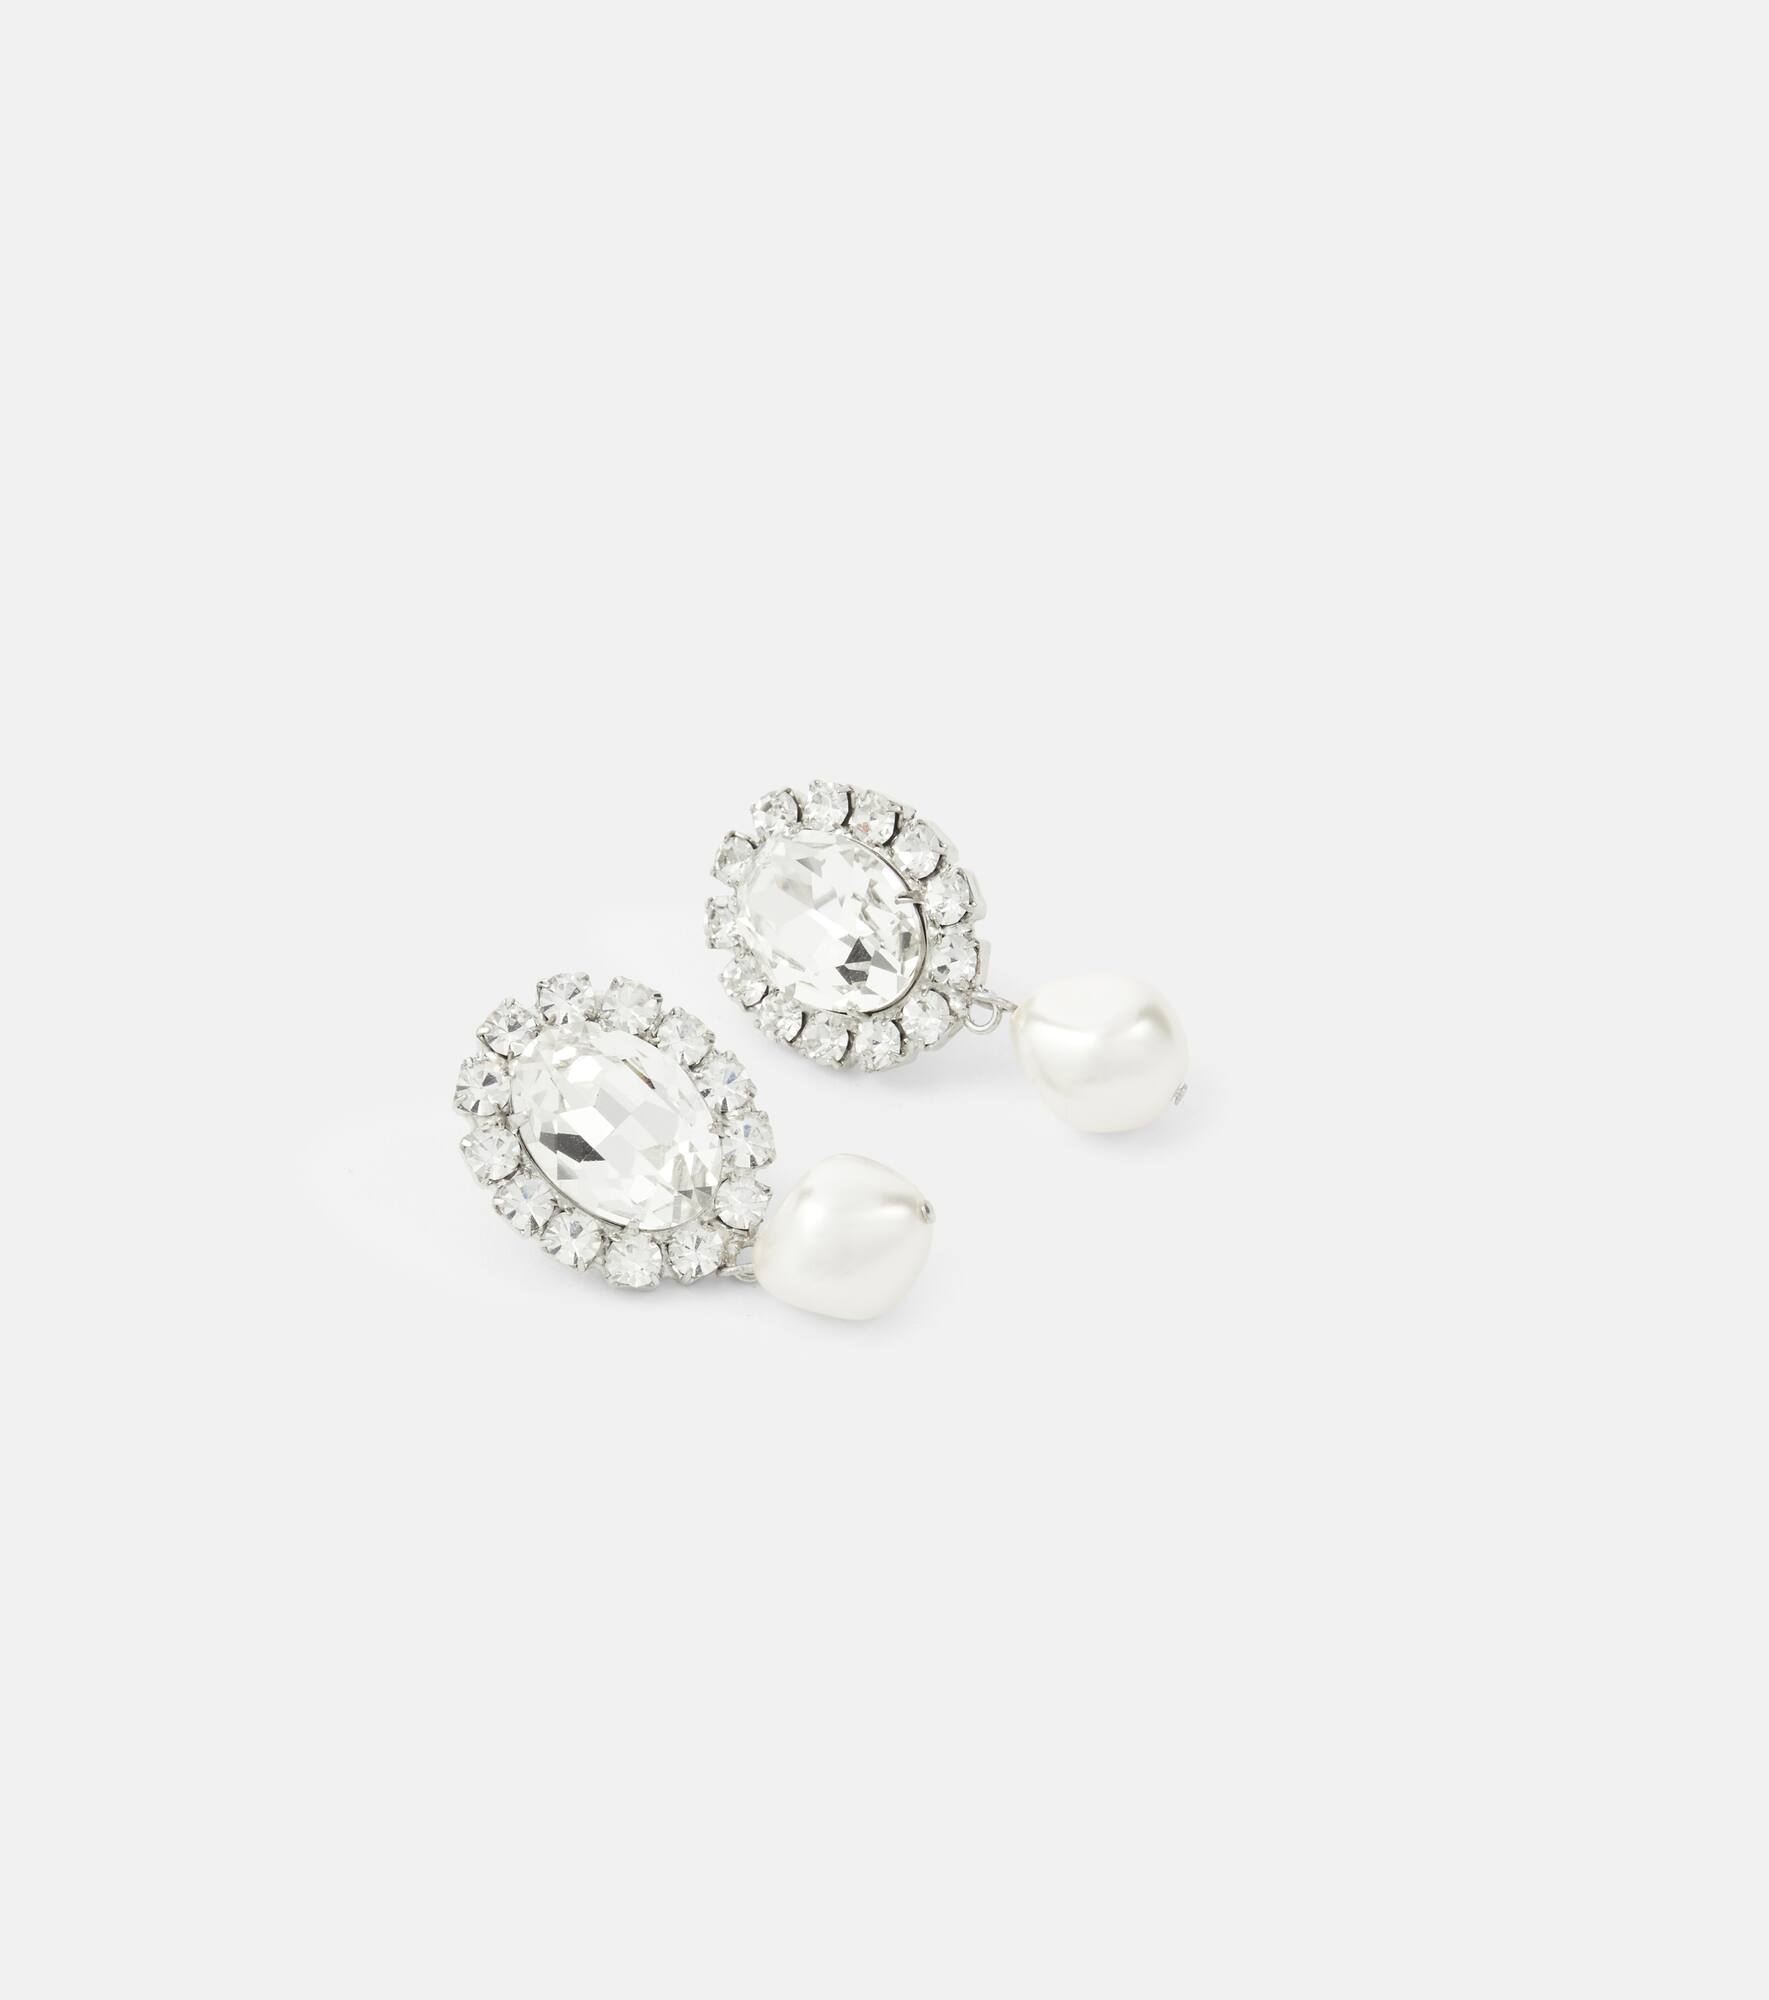 Anne embellished earrings - 4